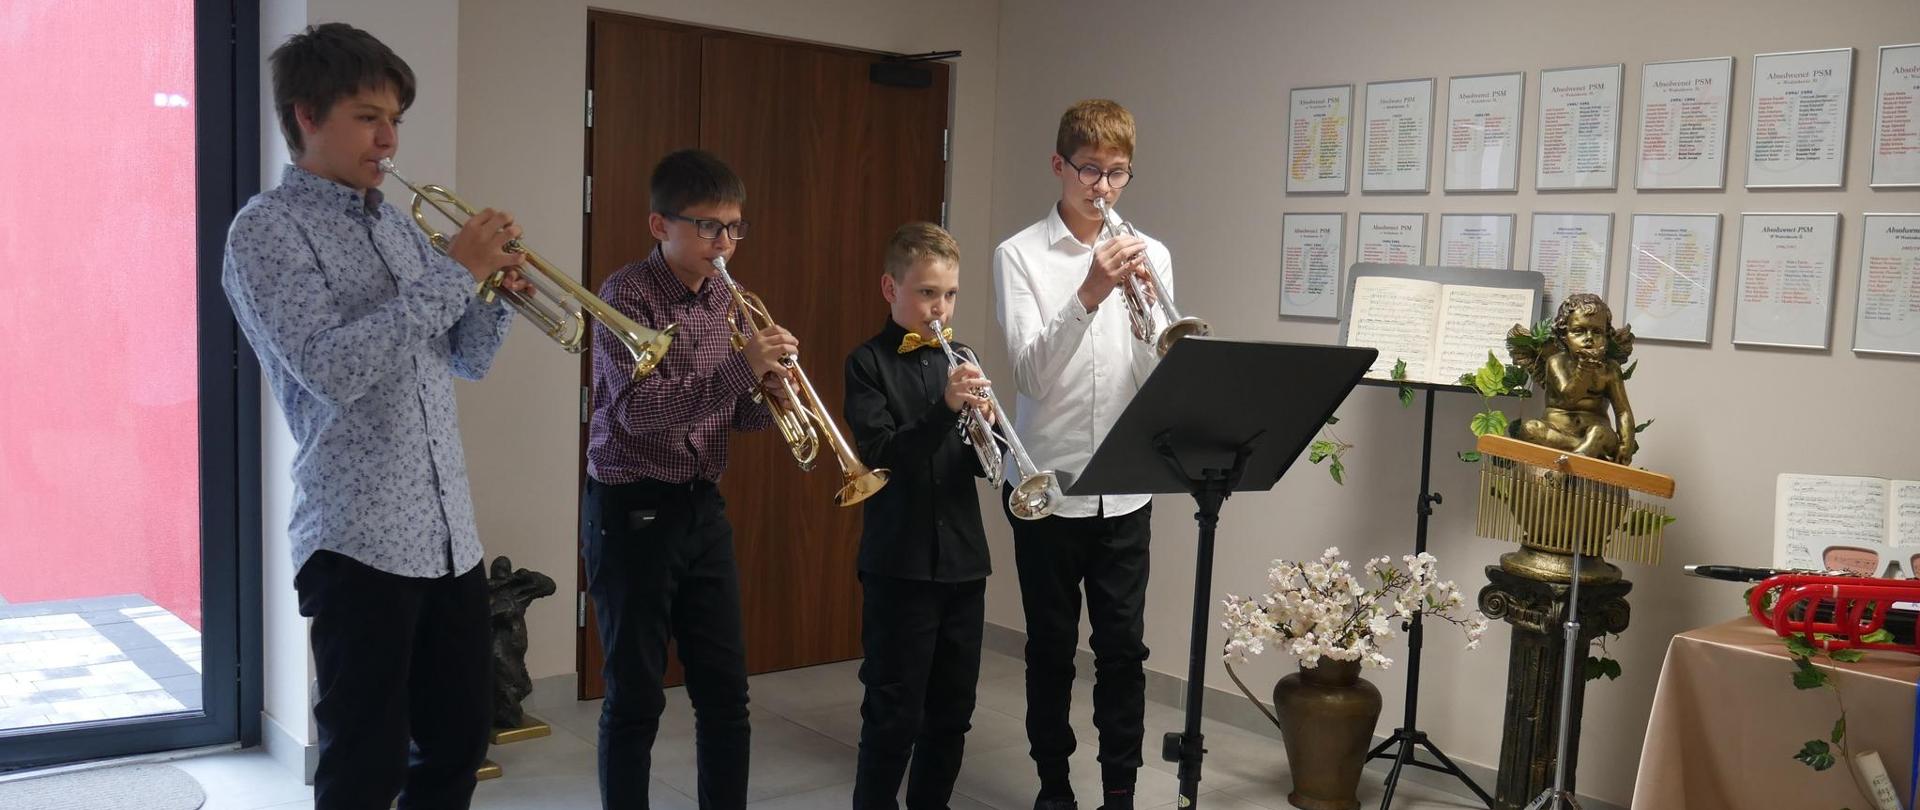 Czterech trębaczy w foyer szkoły muzycznej